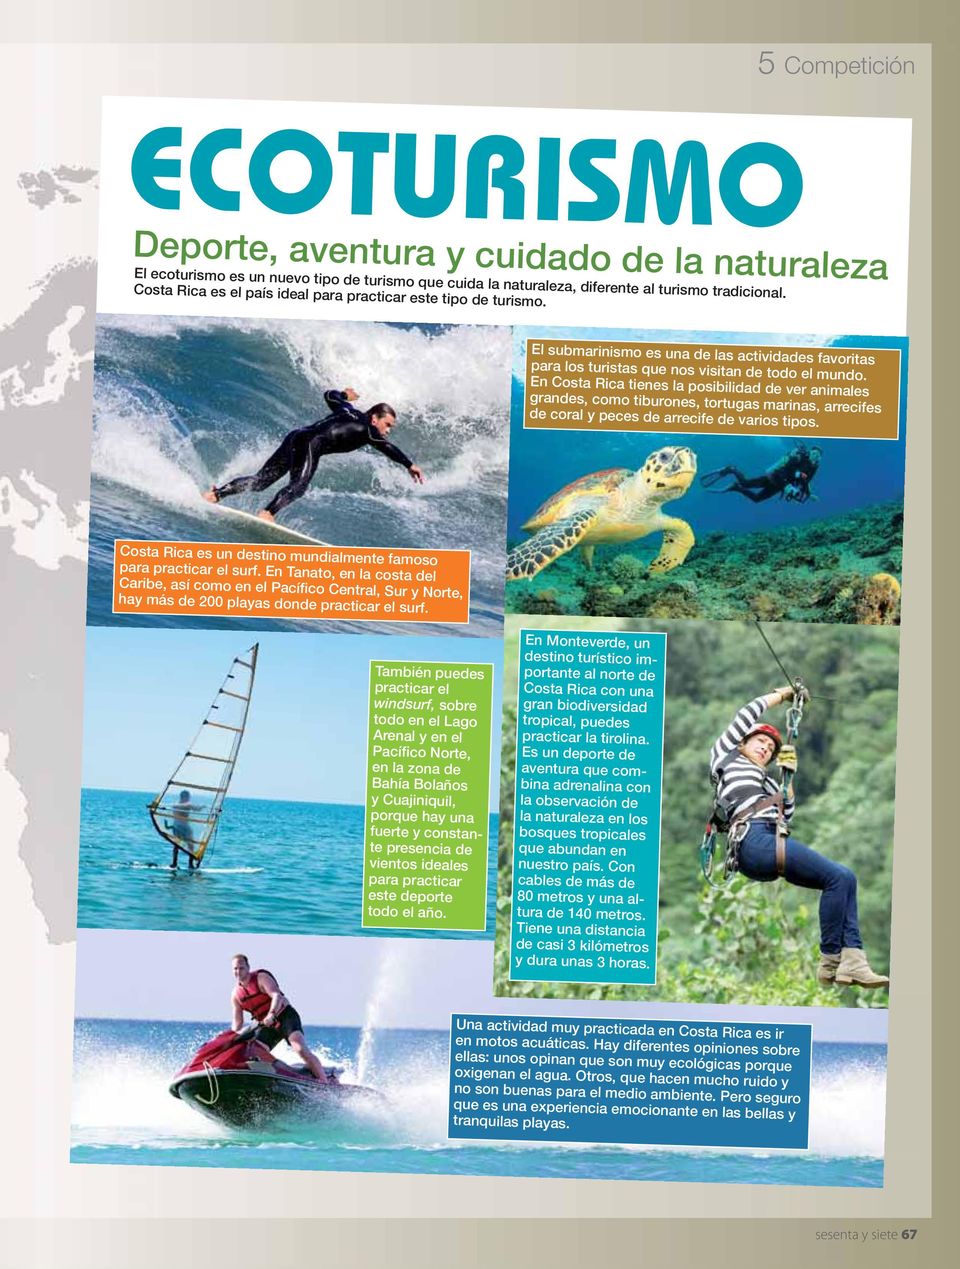 En Costa Rica tienes la posibilidad de ver animales grandes, como tiburones, tortugas marinas, arrecifes de coral y peces de arrecife de varios tipos.